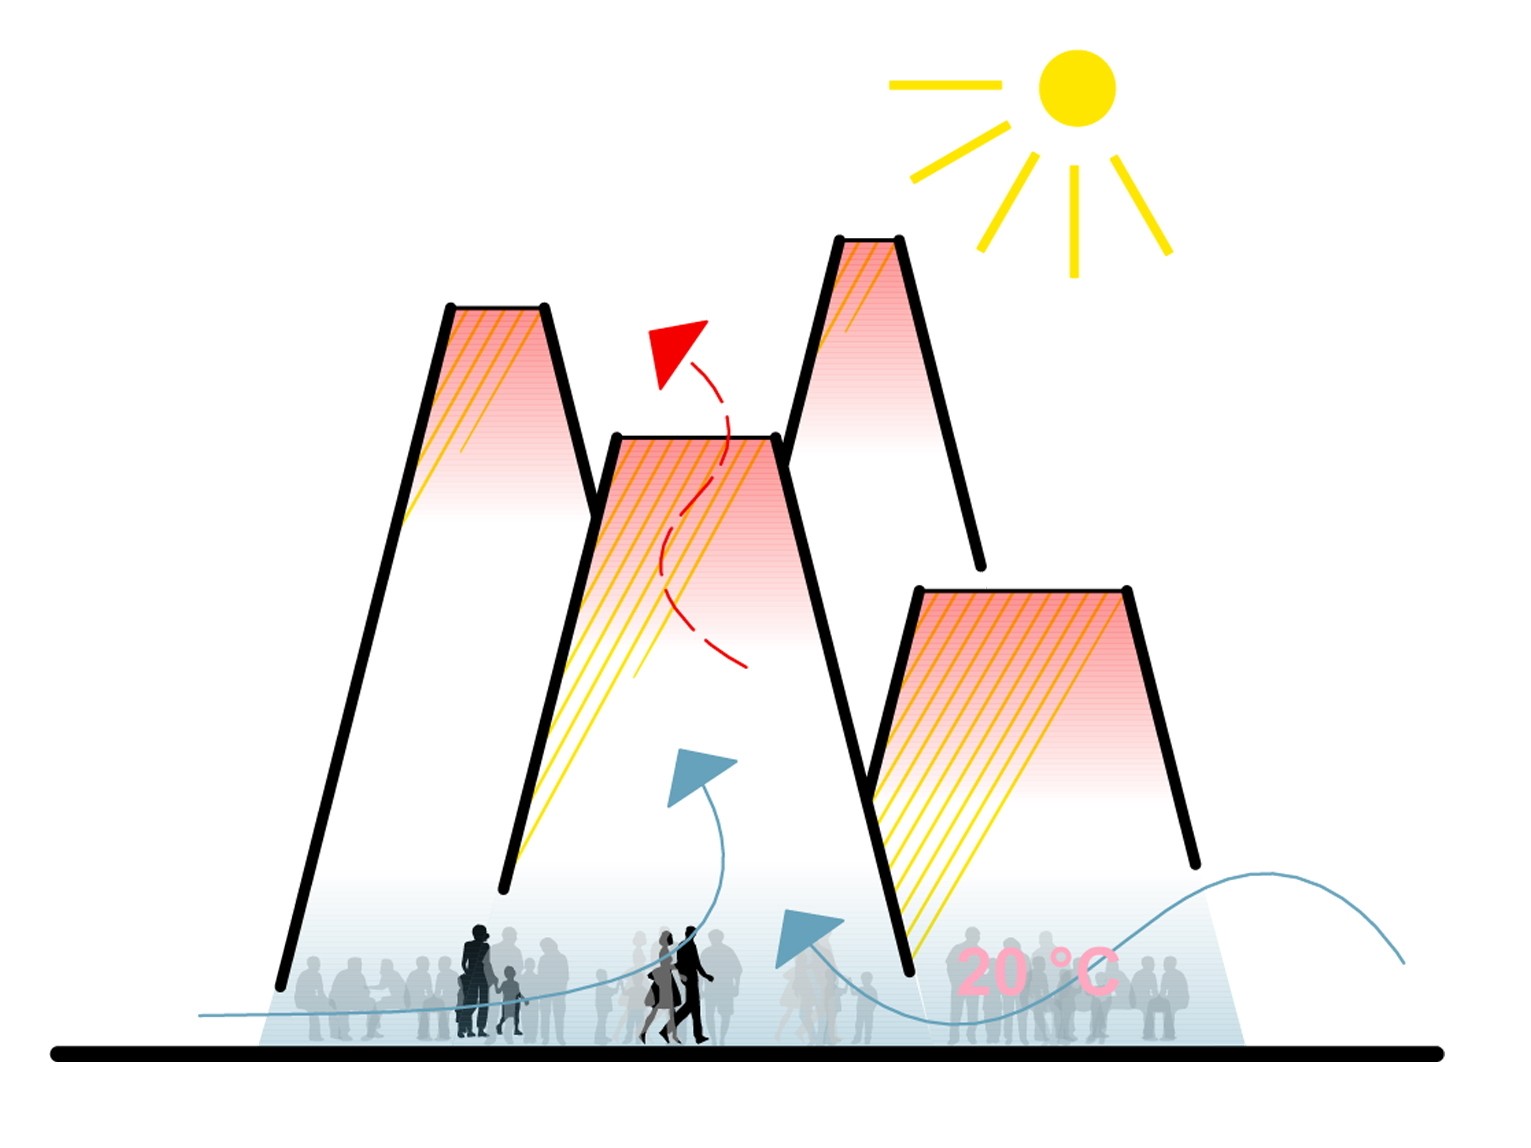 巴吉风塔锥形展馆|迪拜世博会奥地利馆设计竞赛第一名获奖作品_89.jpeg